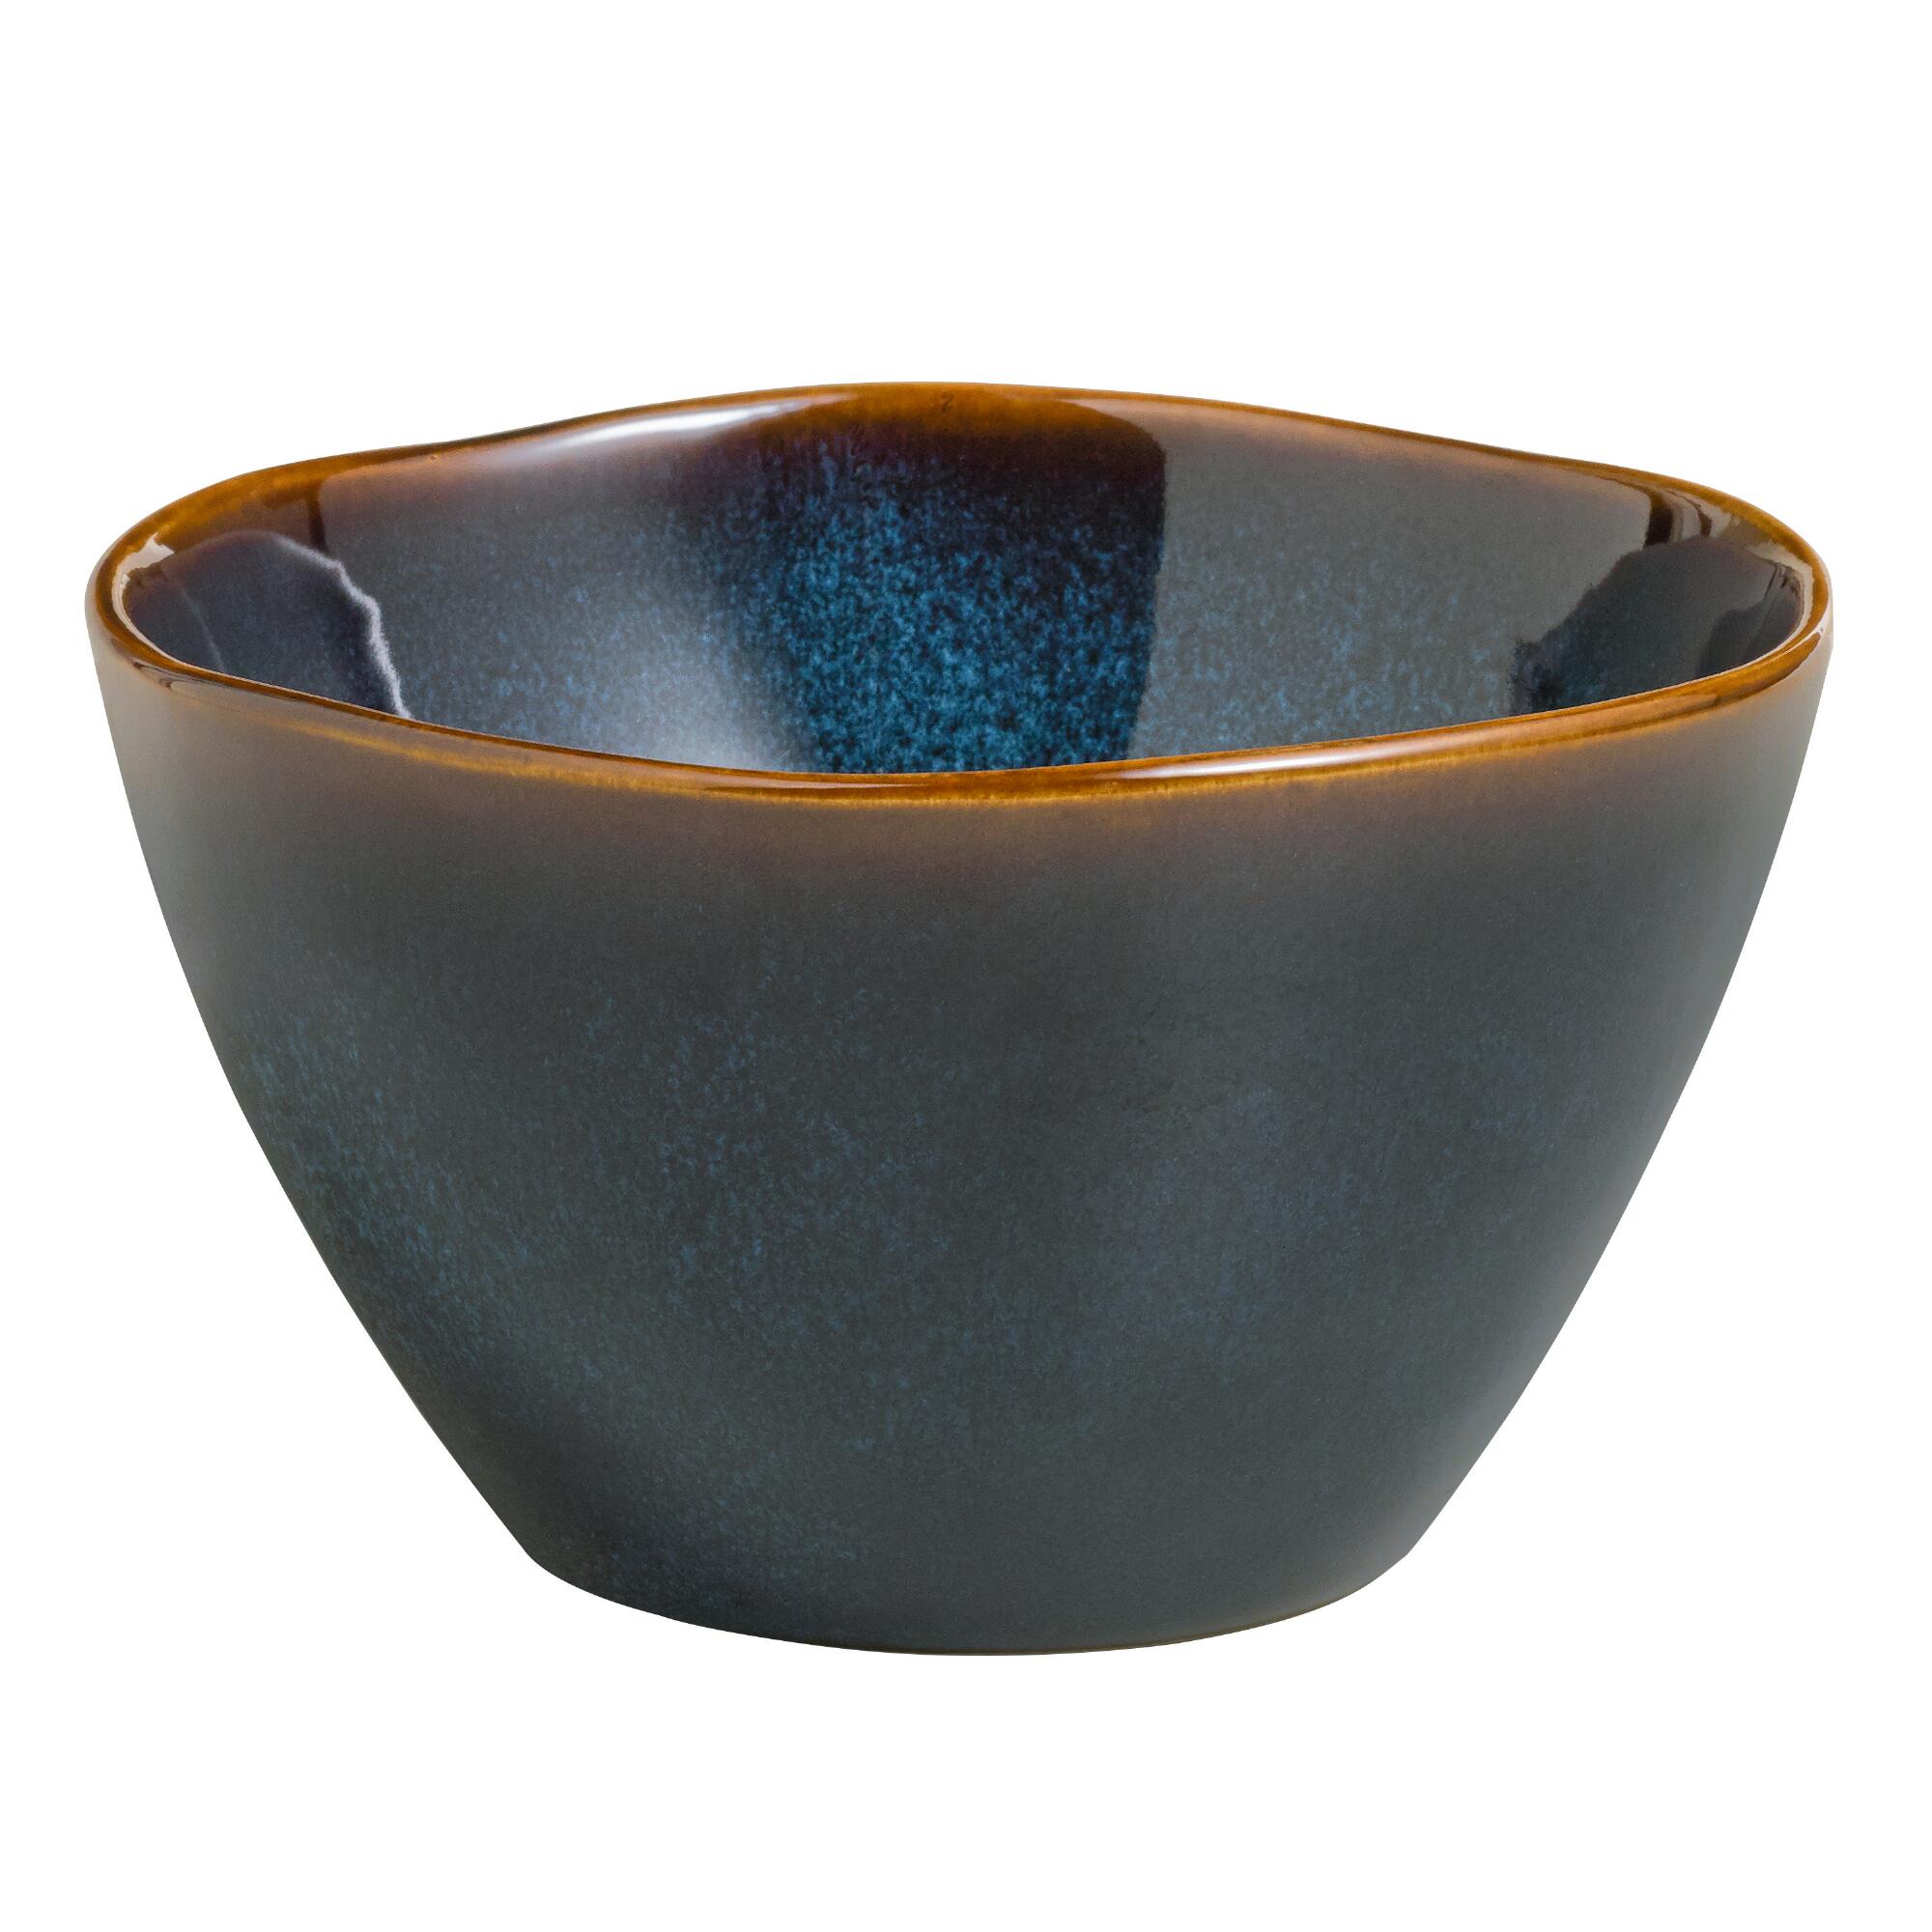 Indigo Organic Reactive Glaze Bowls, set of 2: Blue - Stoneware by World Market